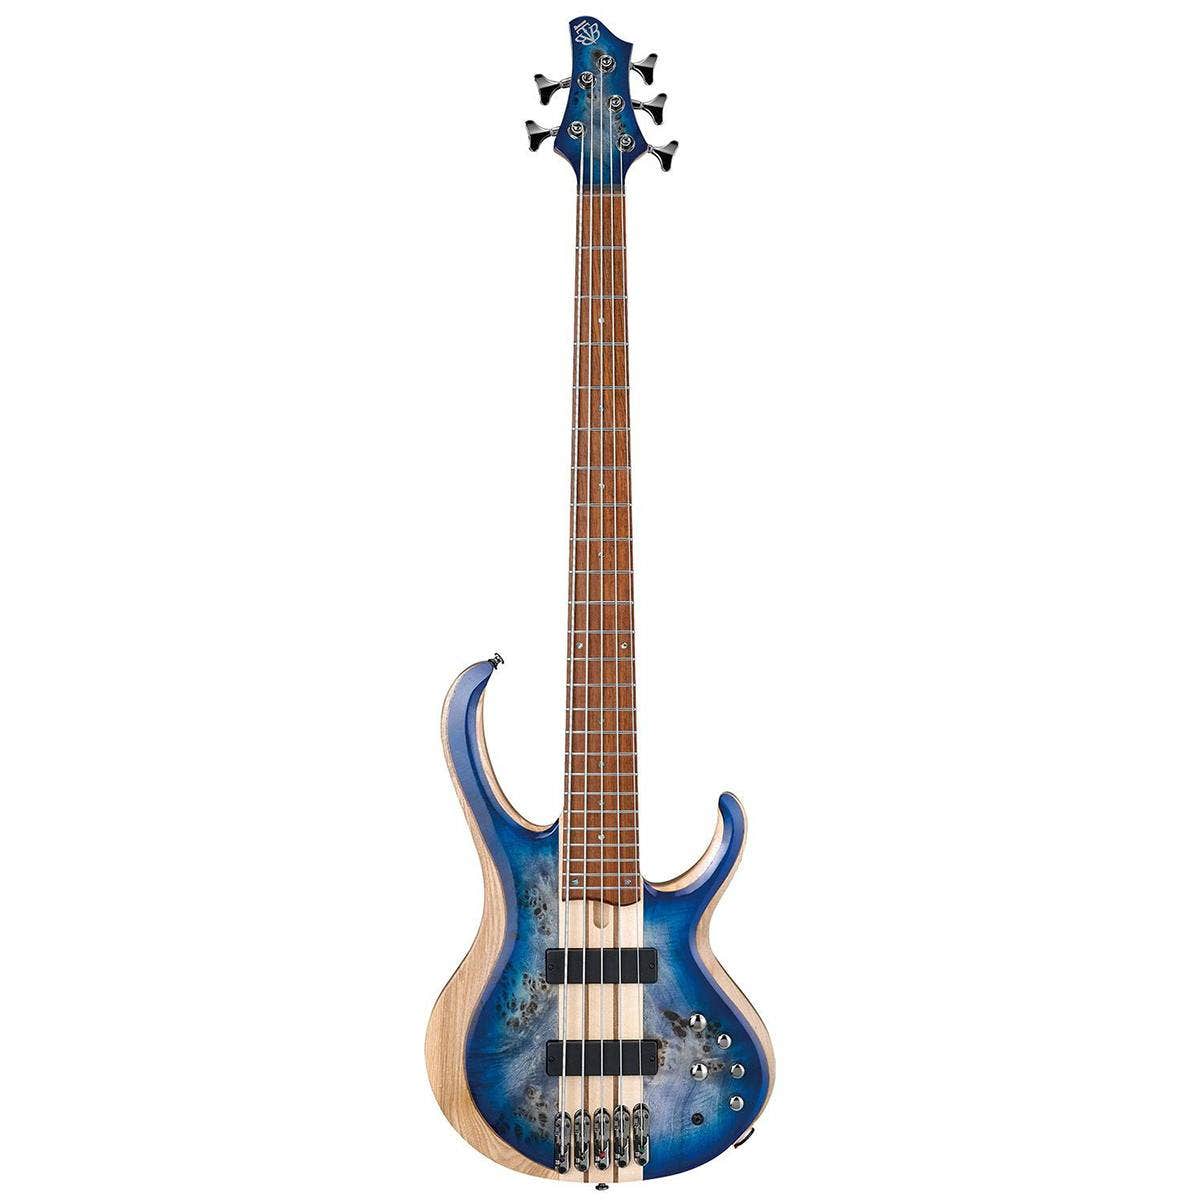 Ibanez BTB845 5-String Bass Guitar Cerulean Blue Burst Low Gloss